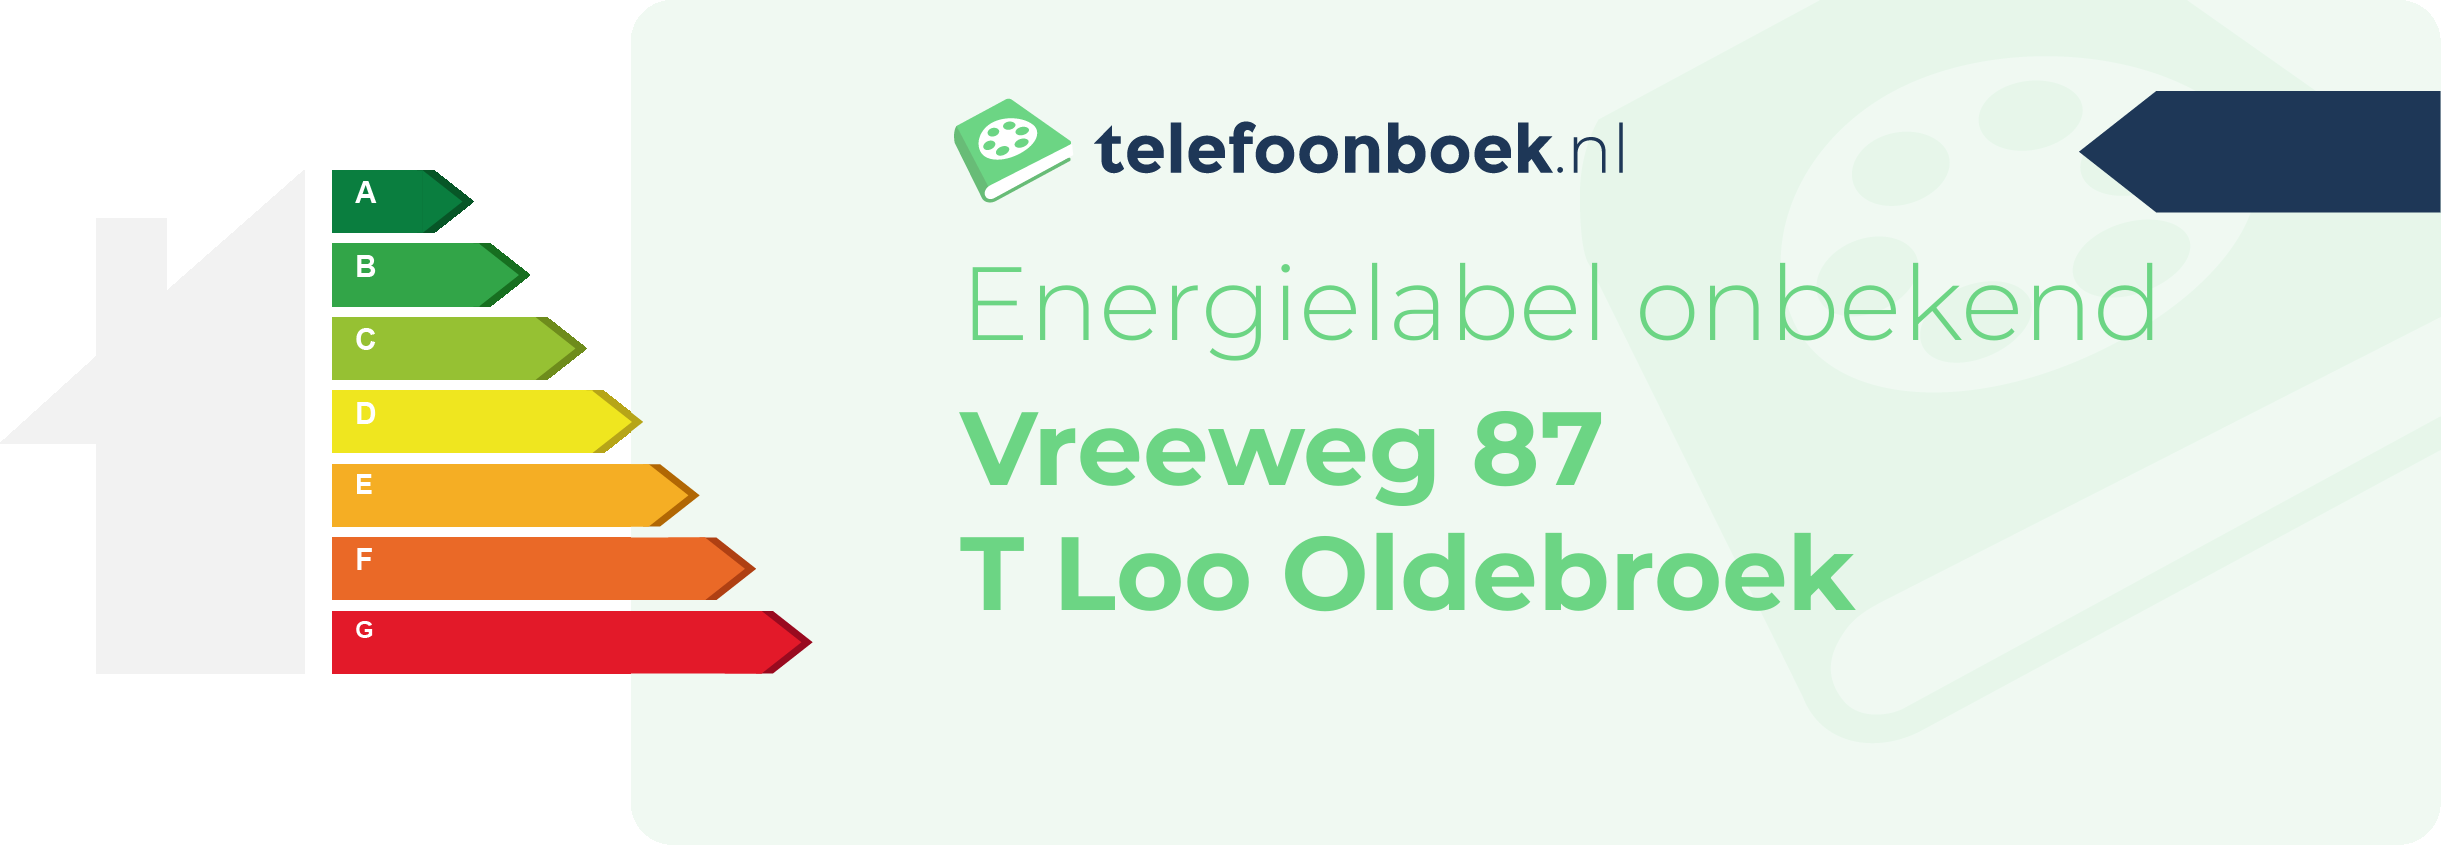 Energielabel Vreeweg 87 T Loo Oldebroek